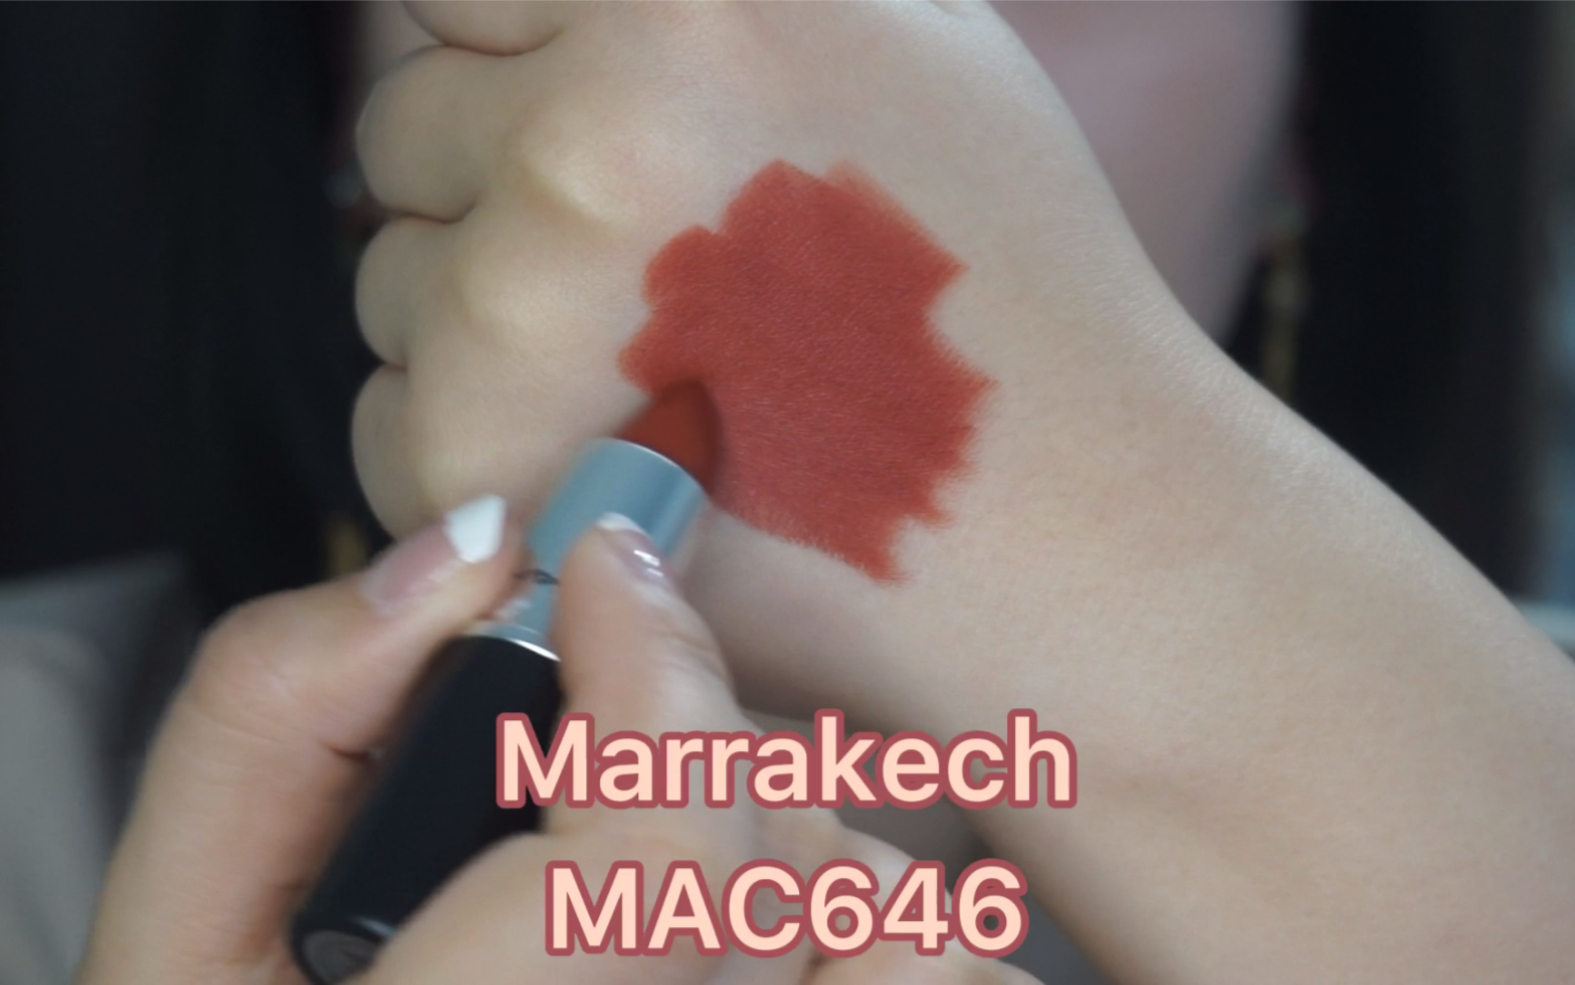 MAC 646 Marrakesh 一支你必须拥有的口红 一键三连 关注爱丽让你拥有同款 爱丽要抽奖了 详细看简介